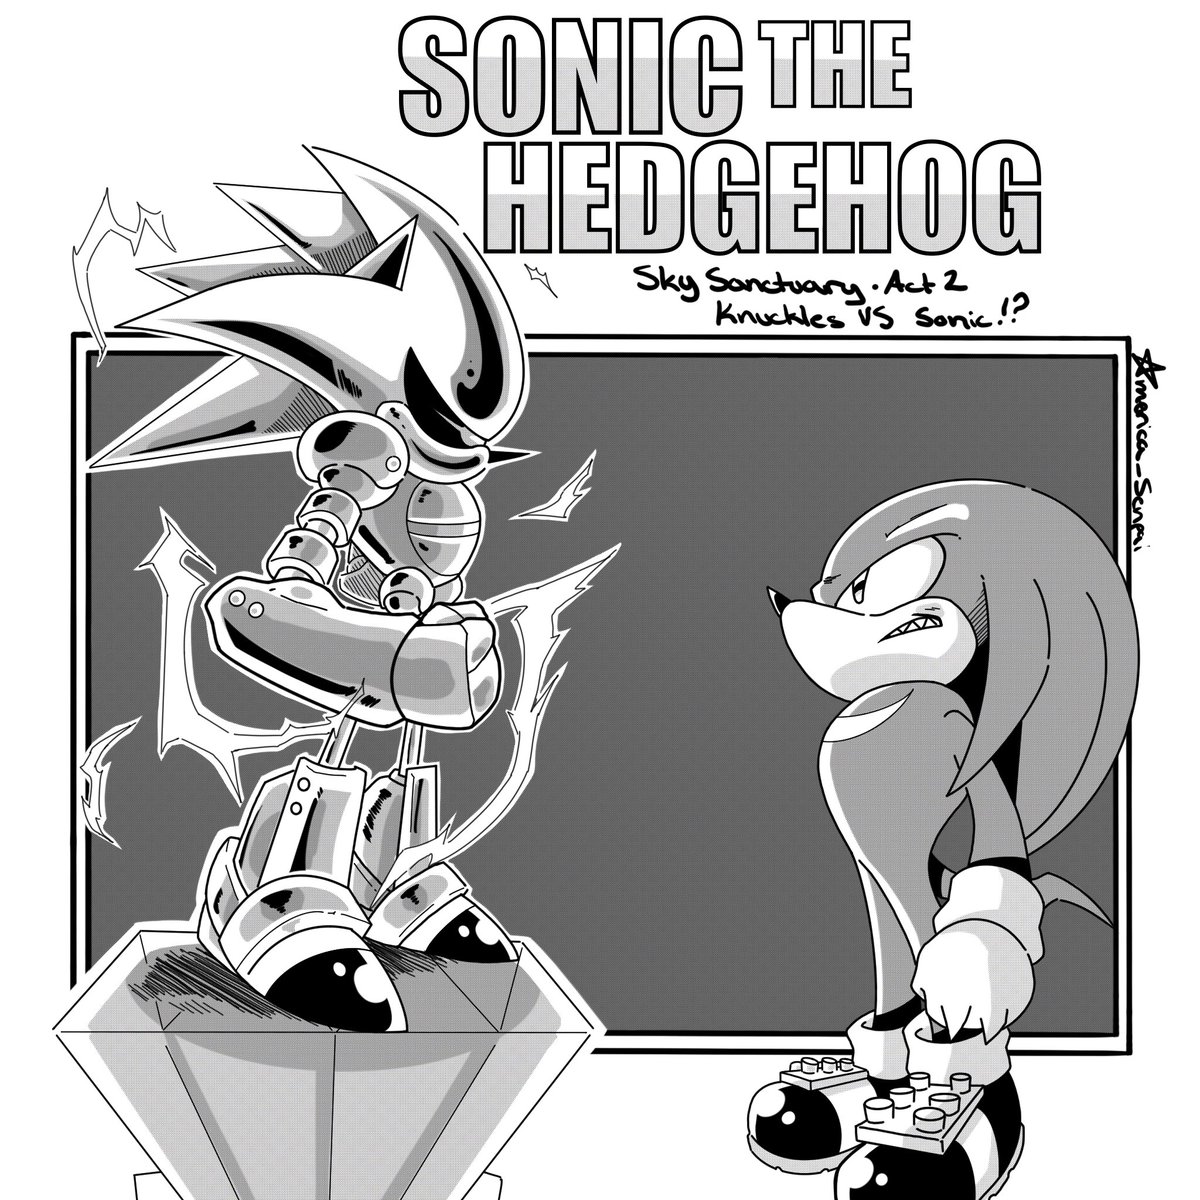 I like the manga voices more 

#SonicTheHedgehog
#Sonic 